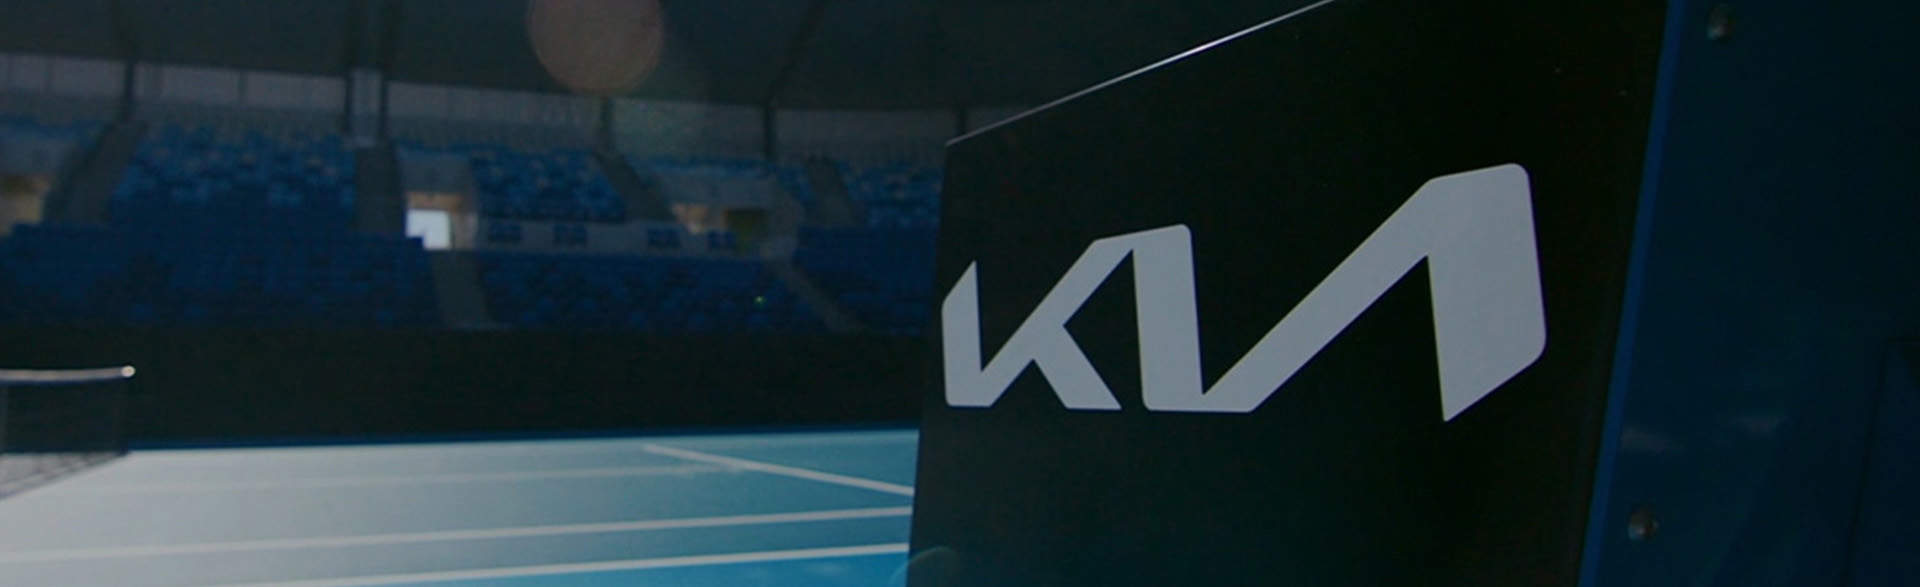 Kia, auspiciante principal del Australian Open